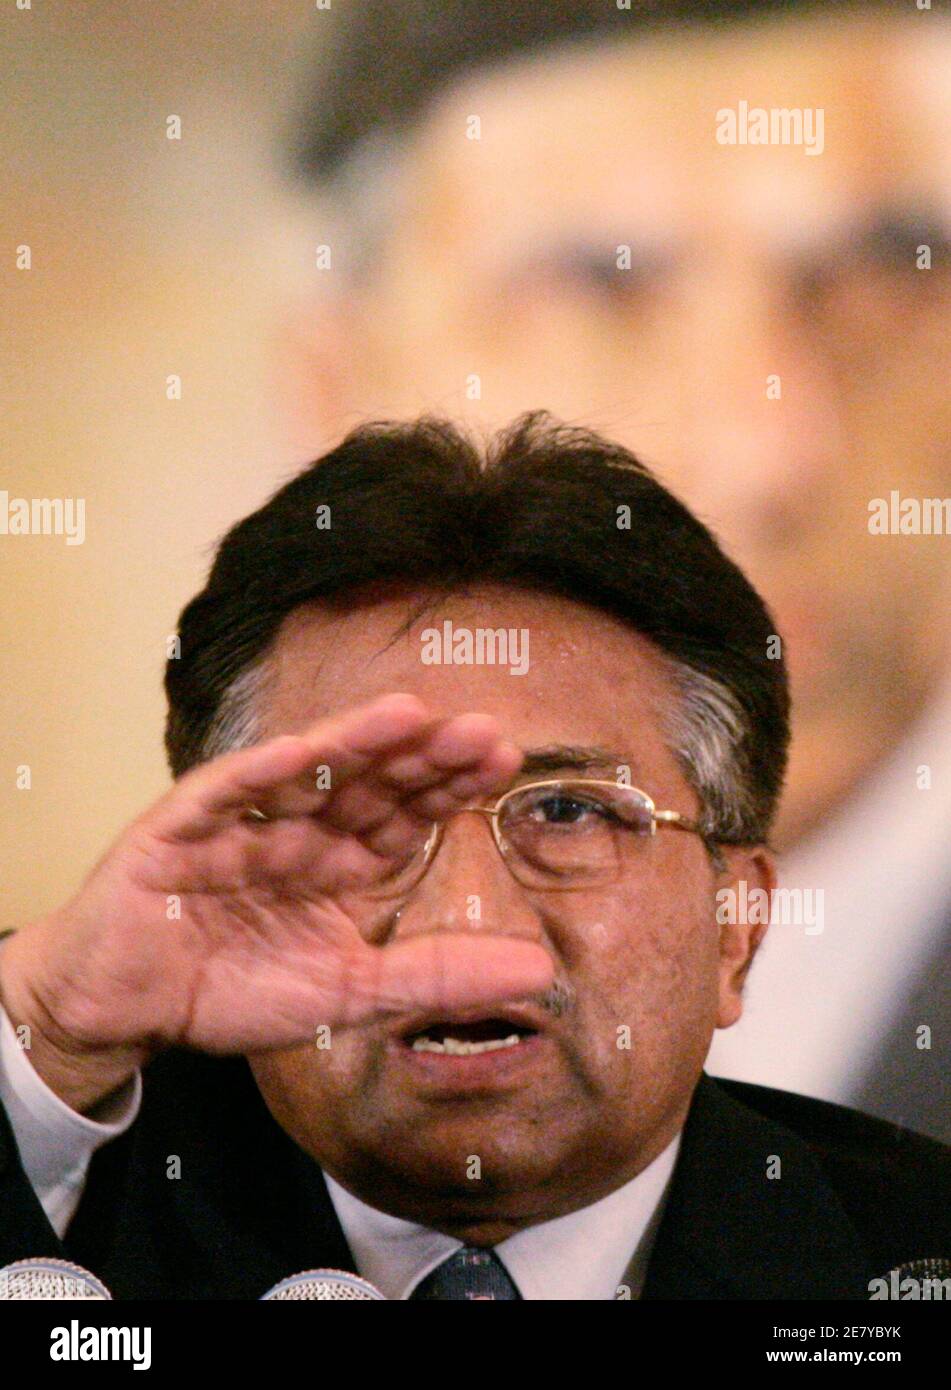 Pakistans Präsident Pervez Musharraf Gesten während einer Pressekonferenz in Islamabad 11. November 2007. Musharraf, sagte unter dem Druck von Rivalen und westlichen Verbündeten Pakistan zurück auf dem Weg zu Demokratie, setzen am Sonntag die Parlamentswahlen Anfang nächsten Jahres stattfinden würde. REUTERS/Faisal Mahmood (PAKISTAN) Stockfoto